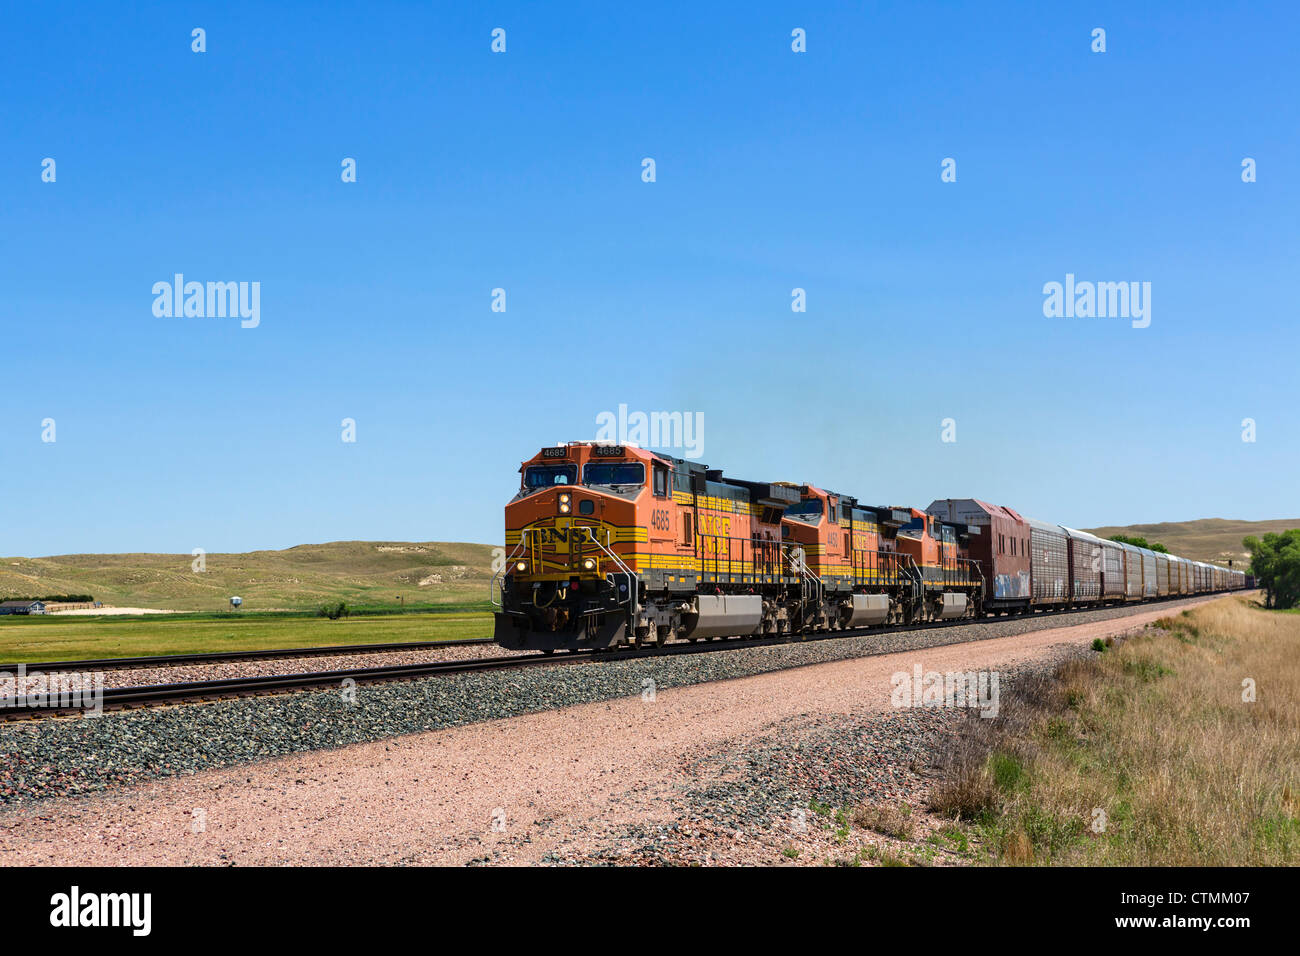 Un percorso lungo 2 km treno merci nelle zone rurali del Nebraska a fianco della porzione occidentale di NE 2, Nebraska, STATI UNITI D'AMERICA Foto Stock